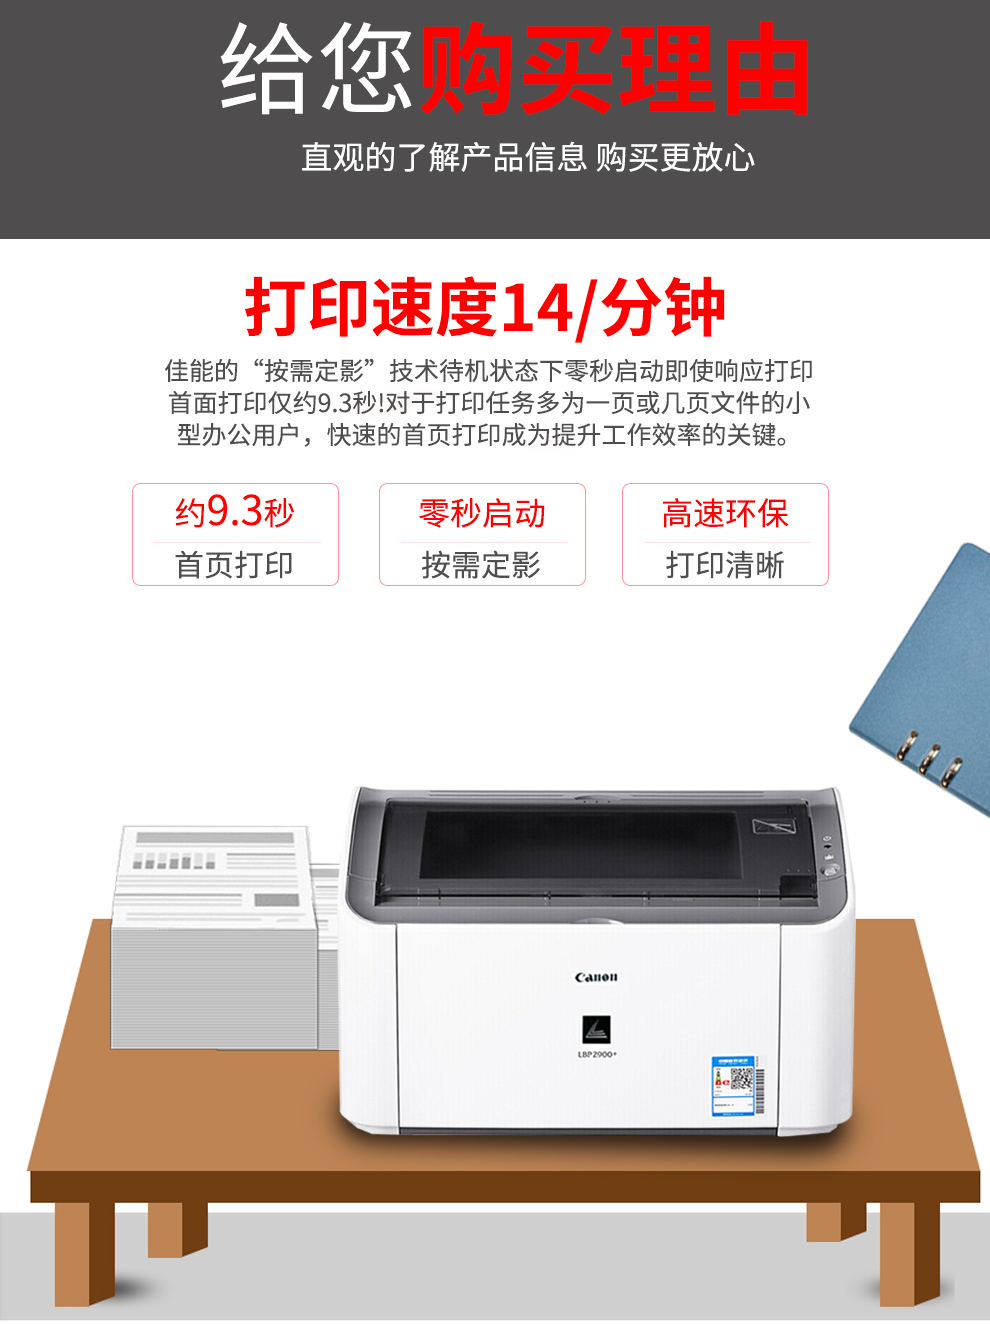 佳能LBP2900打印机凭证医院办公家用A4黑白激光打印机LBP2900+ - 图1